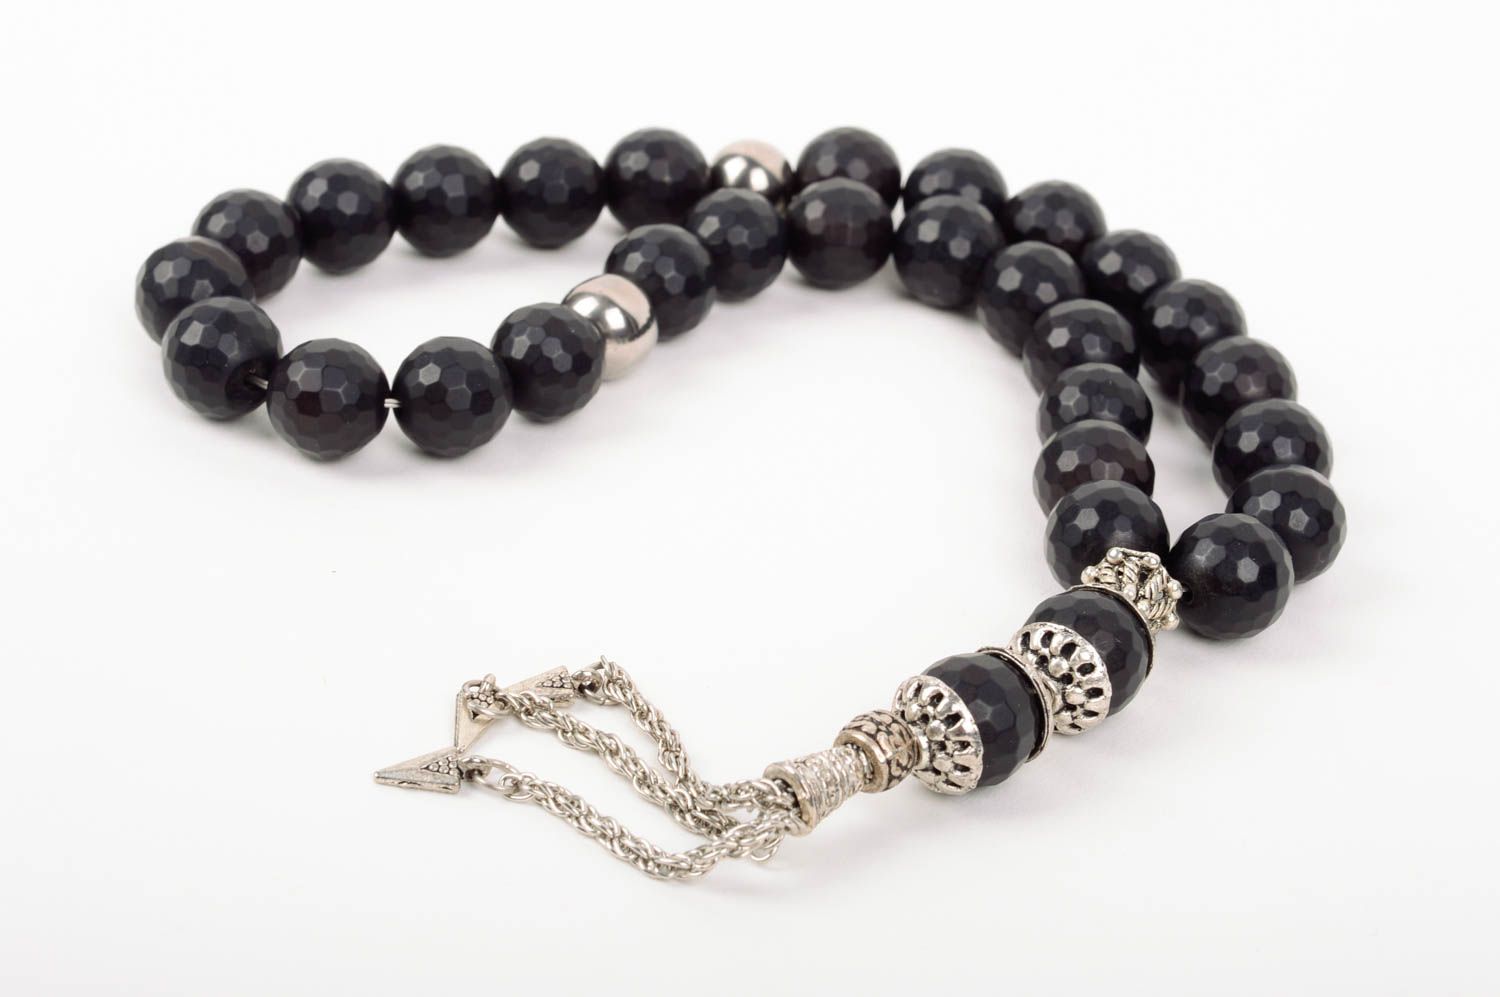 BUY Rosary beads handmade prayer rope church accessories spiritual ...